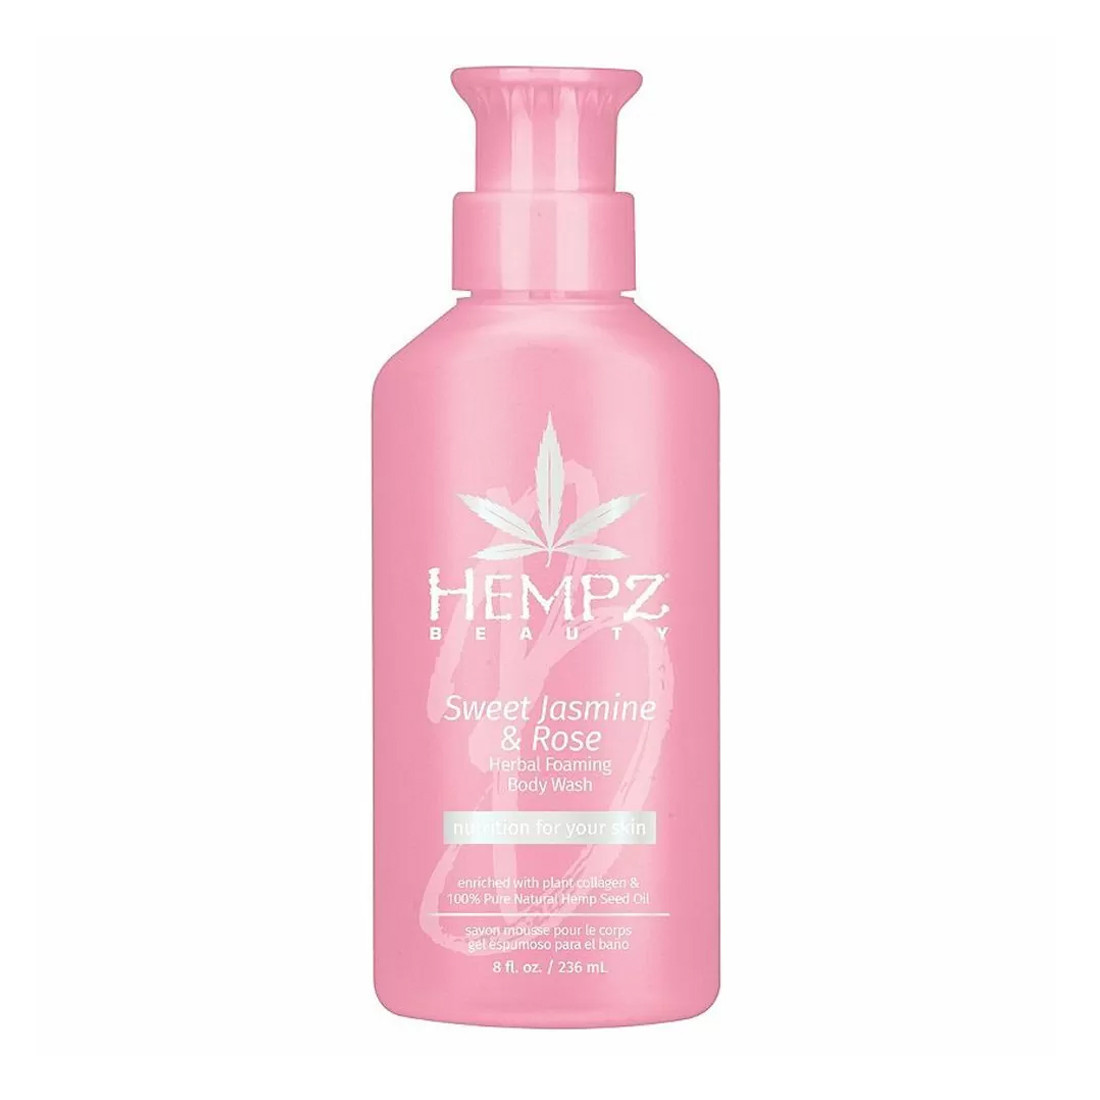 Відгуки про Hempz Sweet Jasmine And Rose Herbal Foaming Body Wash - Гель для душа Сладкий жасмин и Роза